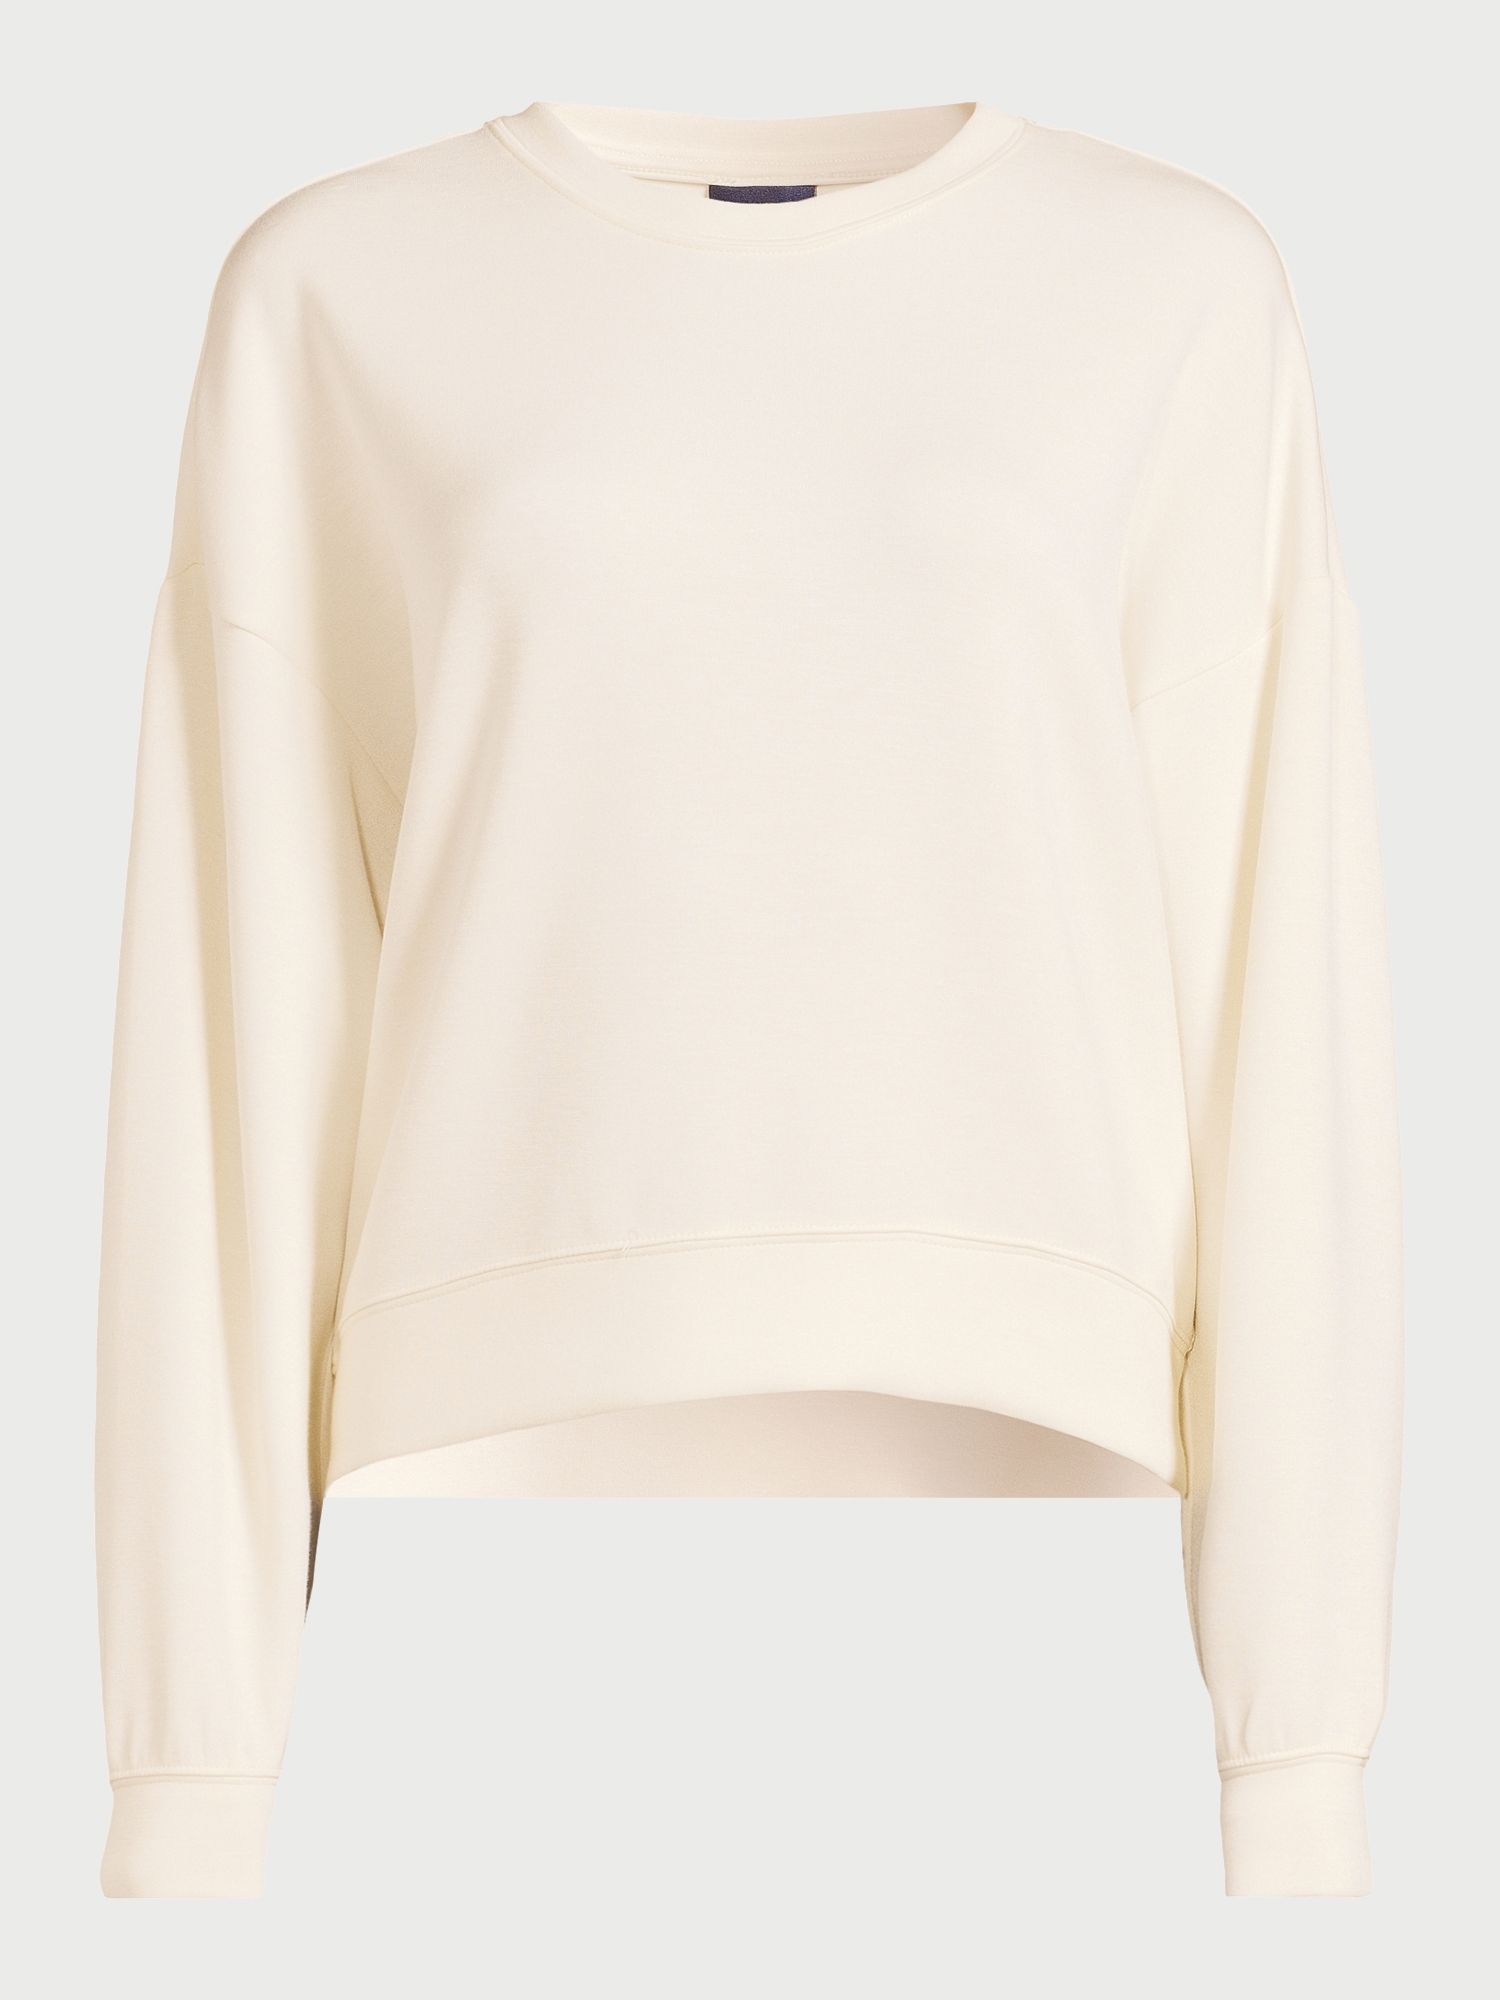 Scoop Women's Scuba Knit Cropped Sweatshirt with Drop Sleeves, Size XS-XXL | Walmart (US)